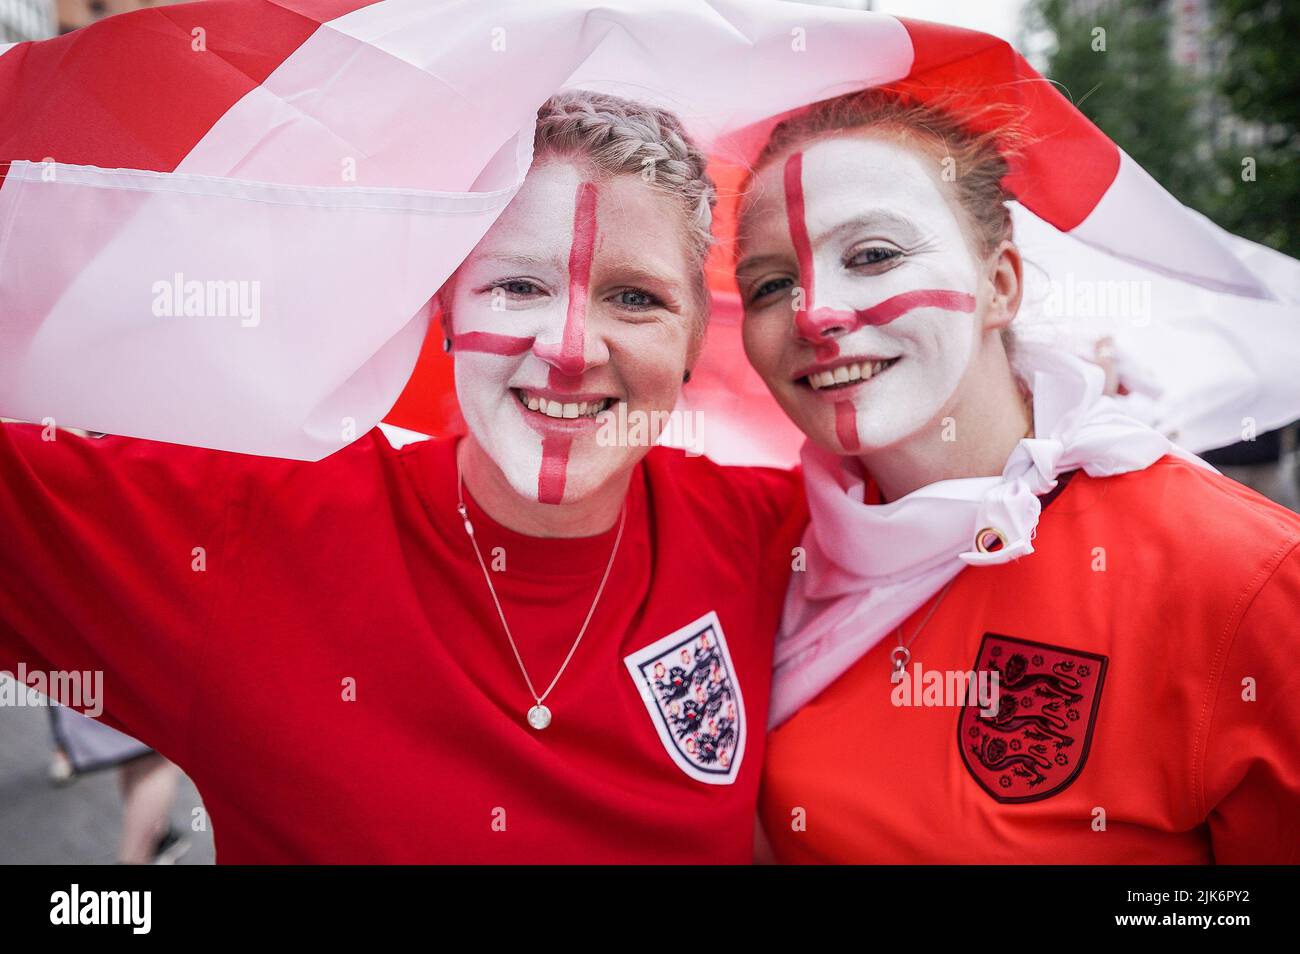 Londres, Reino Unido. 31st de julio de 2022. Euro 2022: Los aficionados llegan al estadio de Wembley antes de la final del partido UEFA Womens EURO Inglaterra vs Alemania. Crédito: Guy Corbishley/Alamy Live News Foto de stock